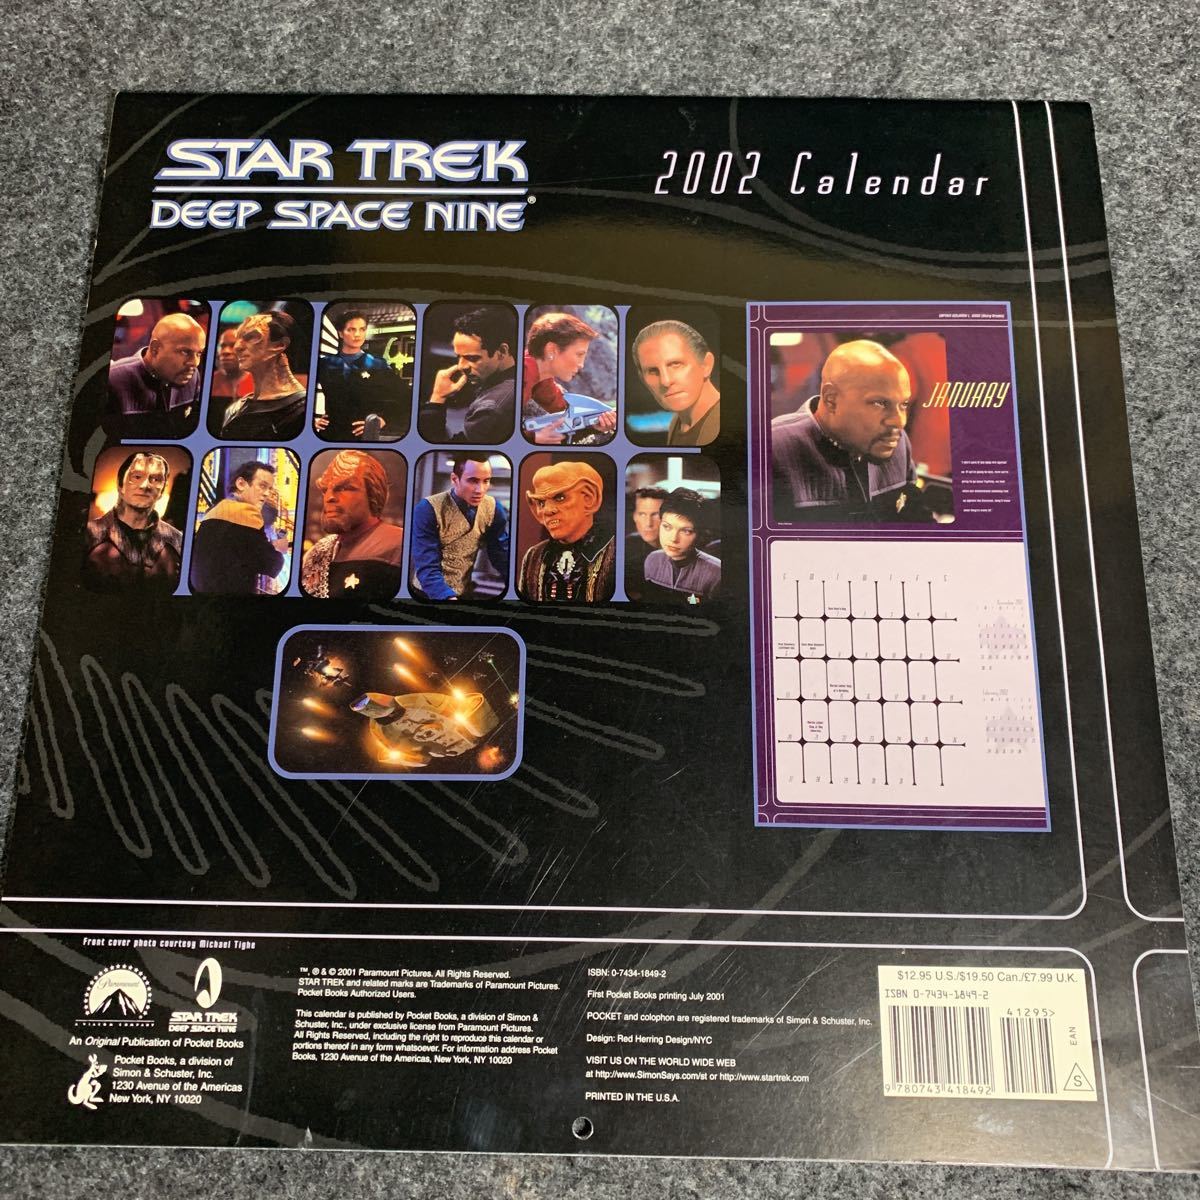 R0289 STAR TREK Star Trek 2002 calendar DEEP SPACE NINE U.S.A